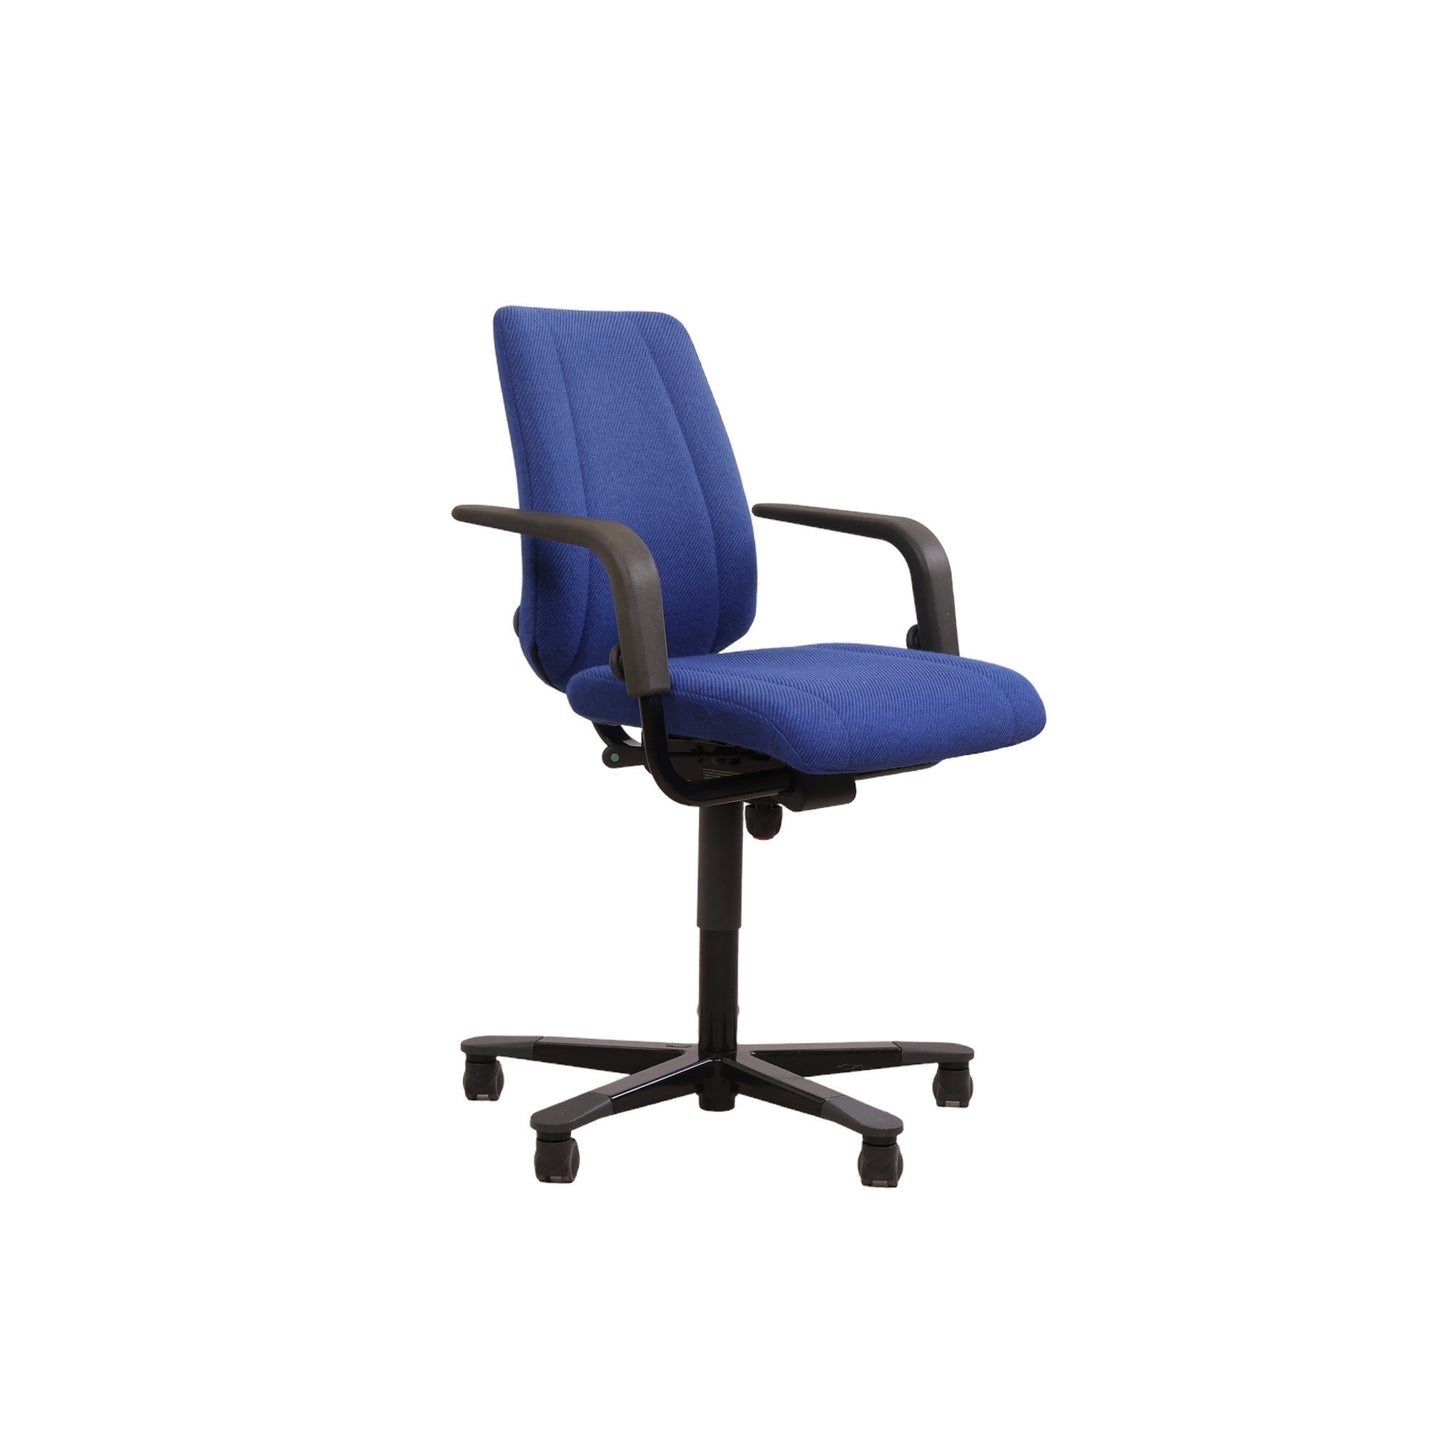 Håg Credo kontorstol i fargen blå